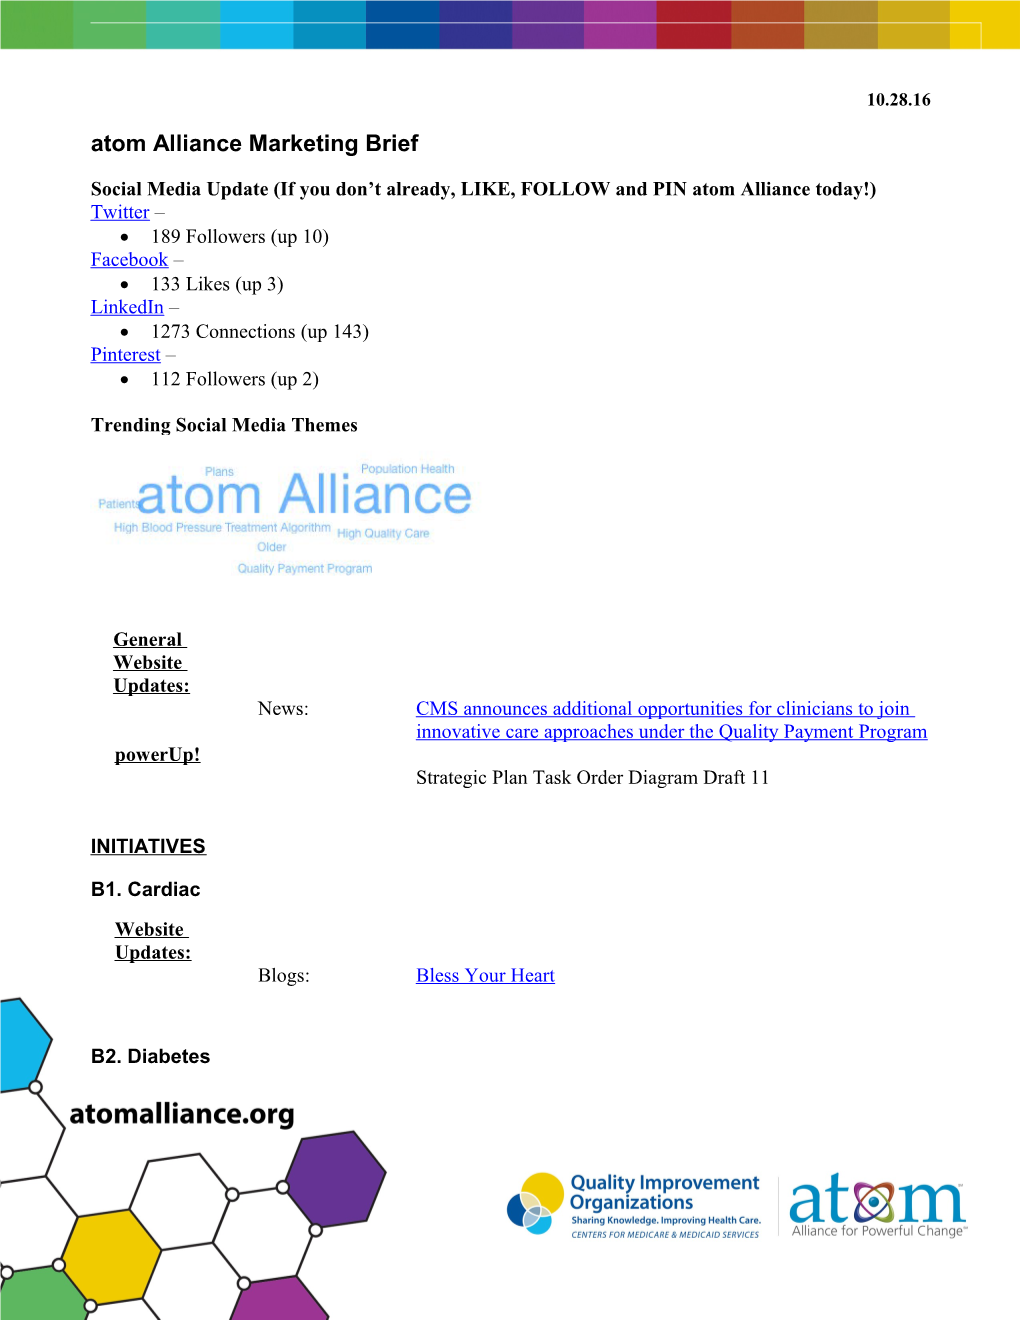 Atom Alliance Marketing Brief